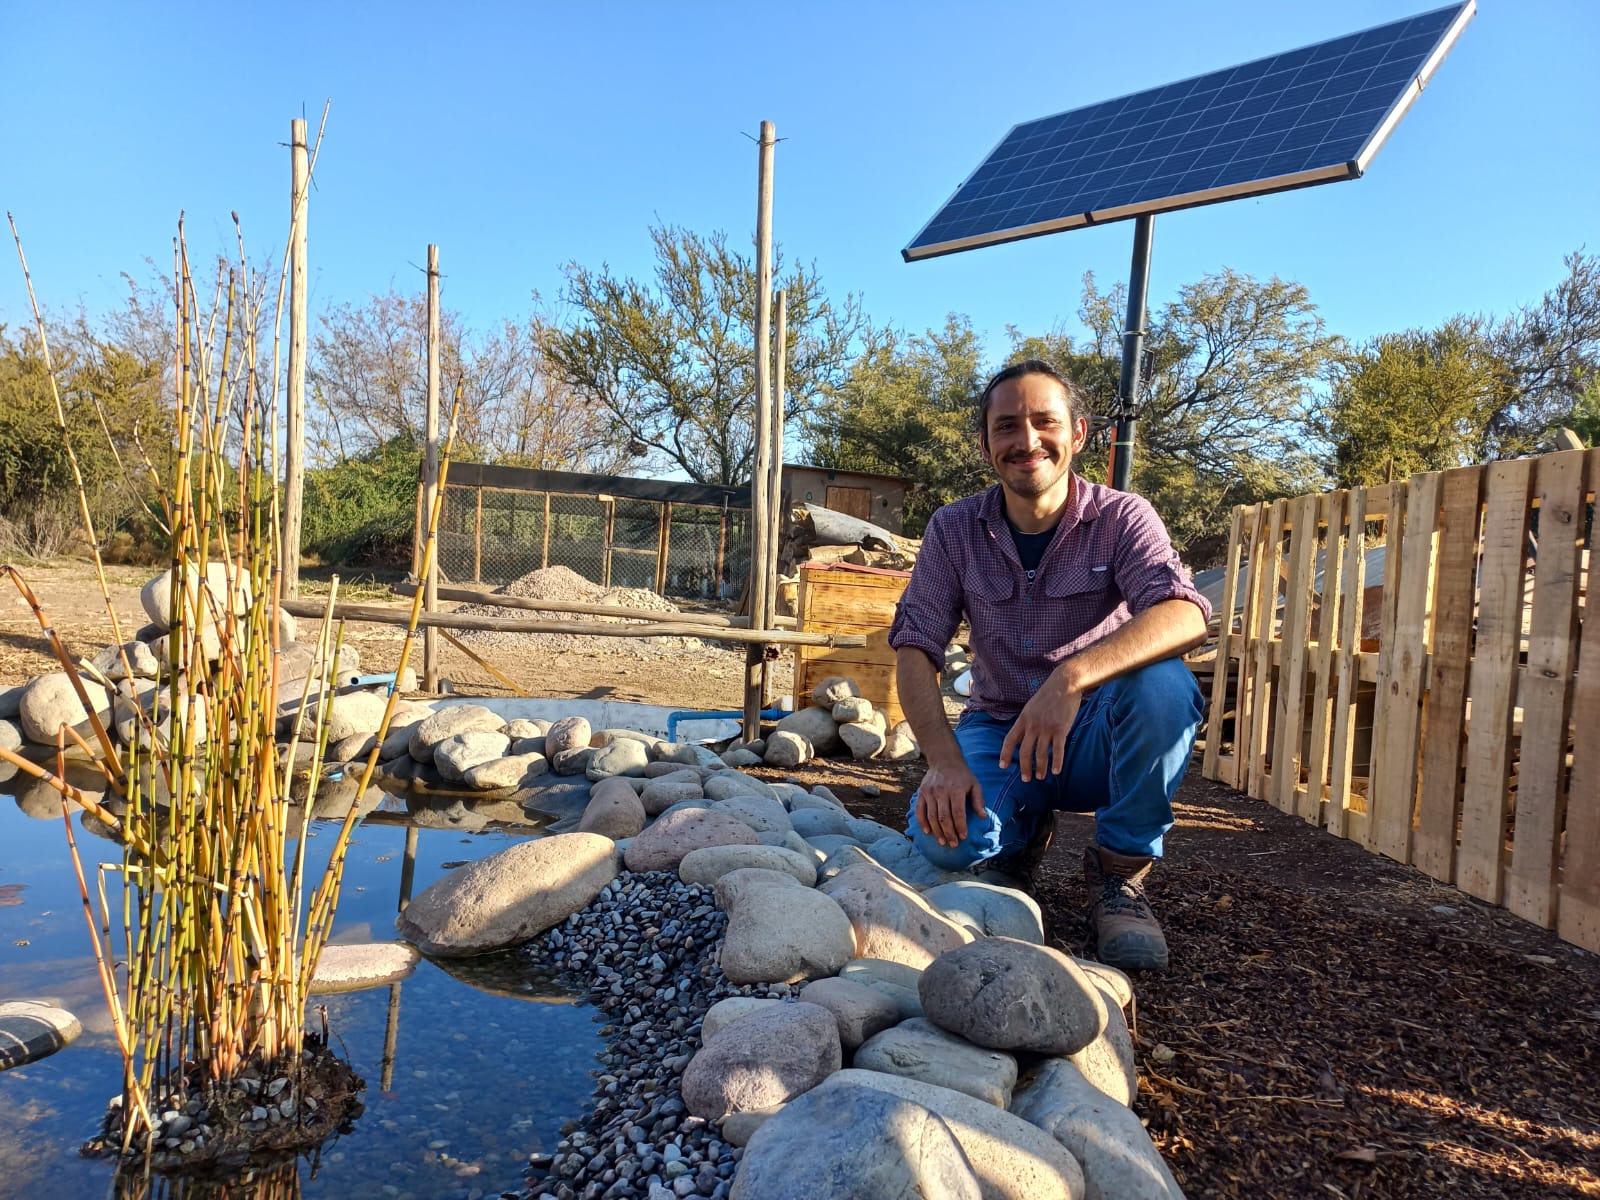 PUTAENDO: Joven Agricultor de Putaendo usa innovador sistema de reciclaje de aguas con peces y plantas acuáticas